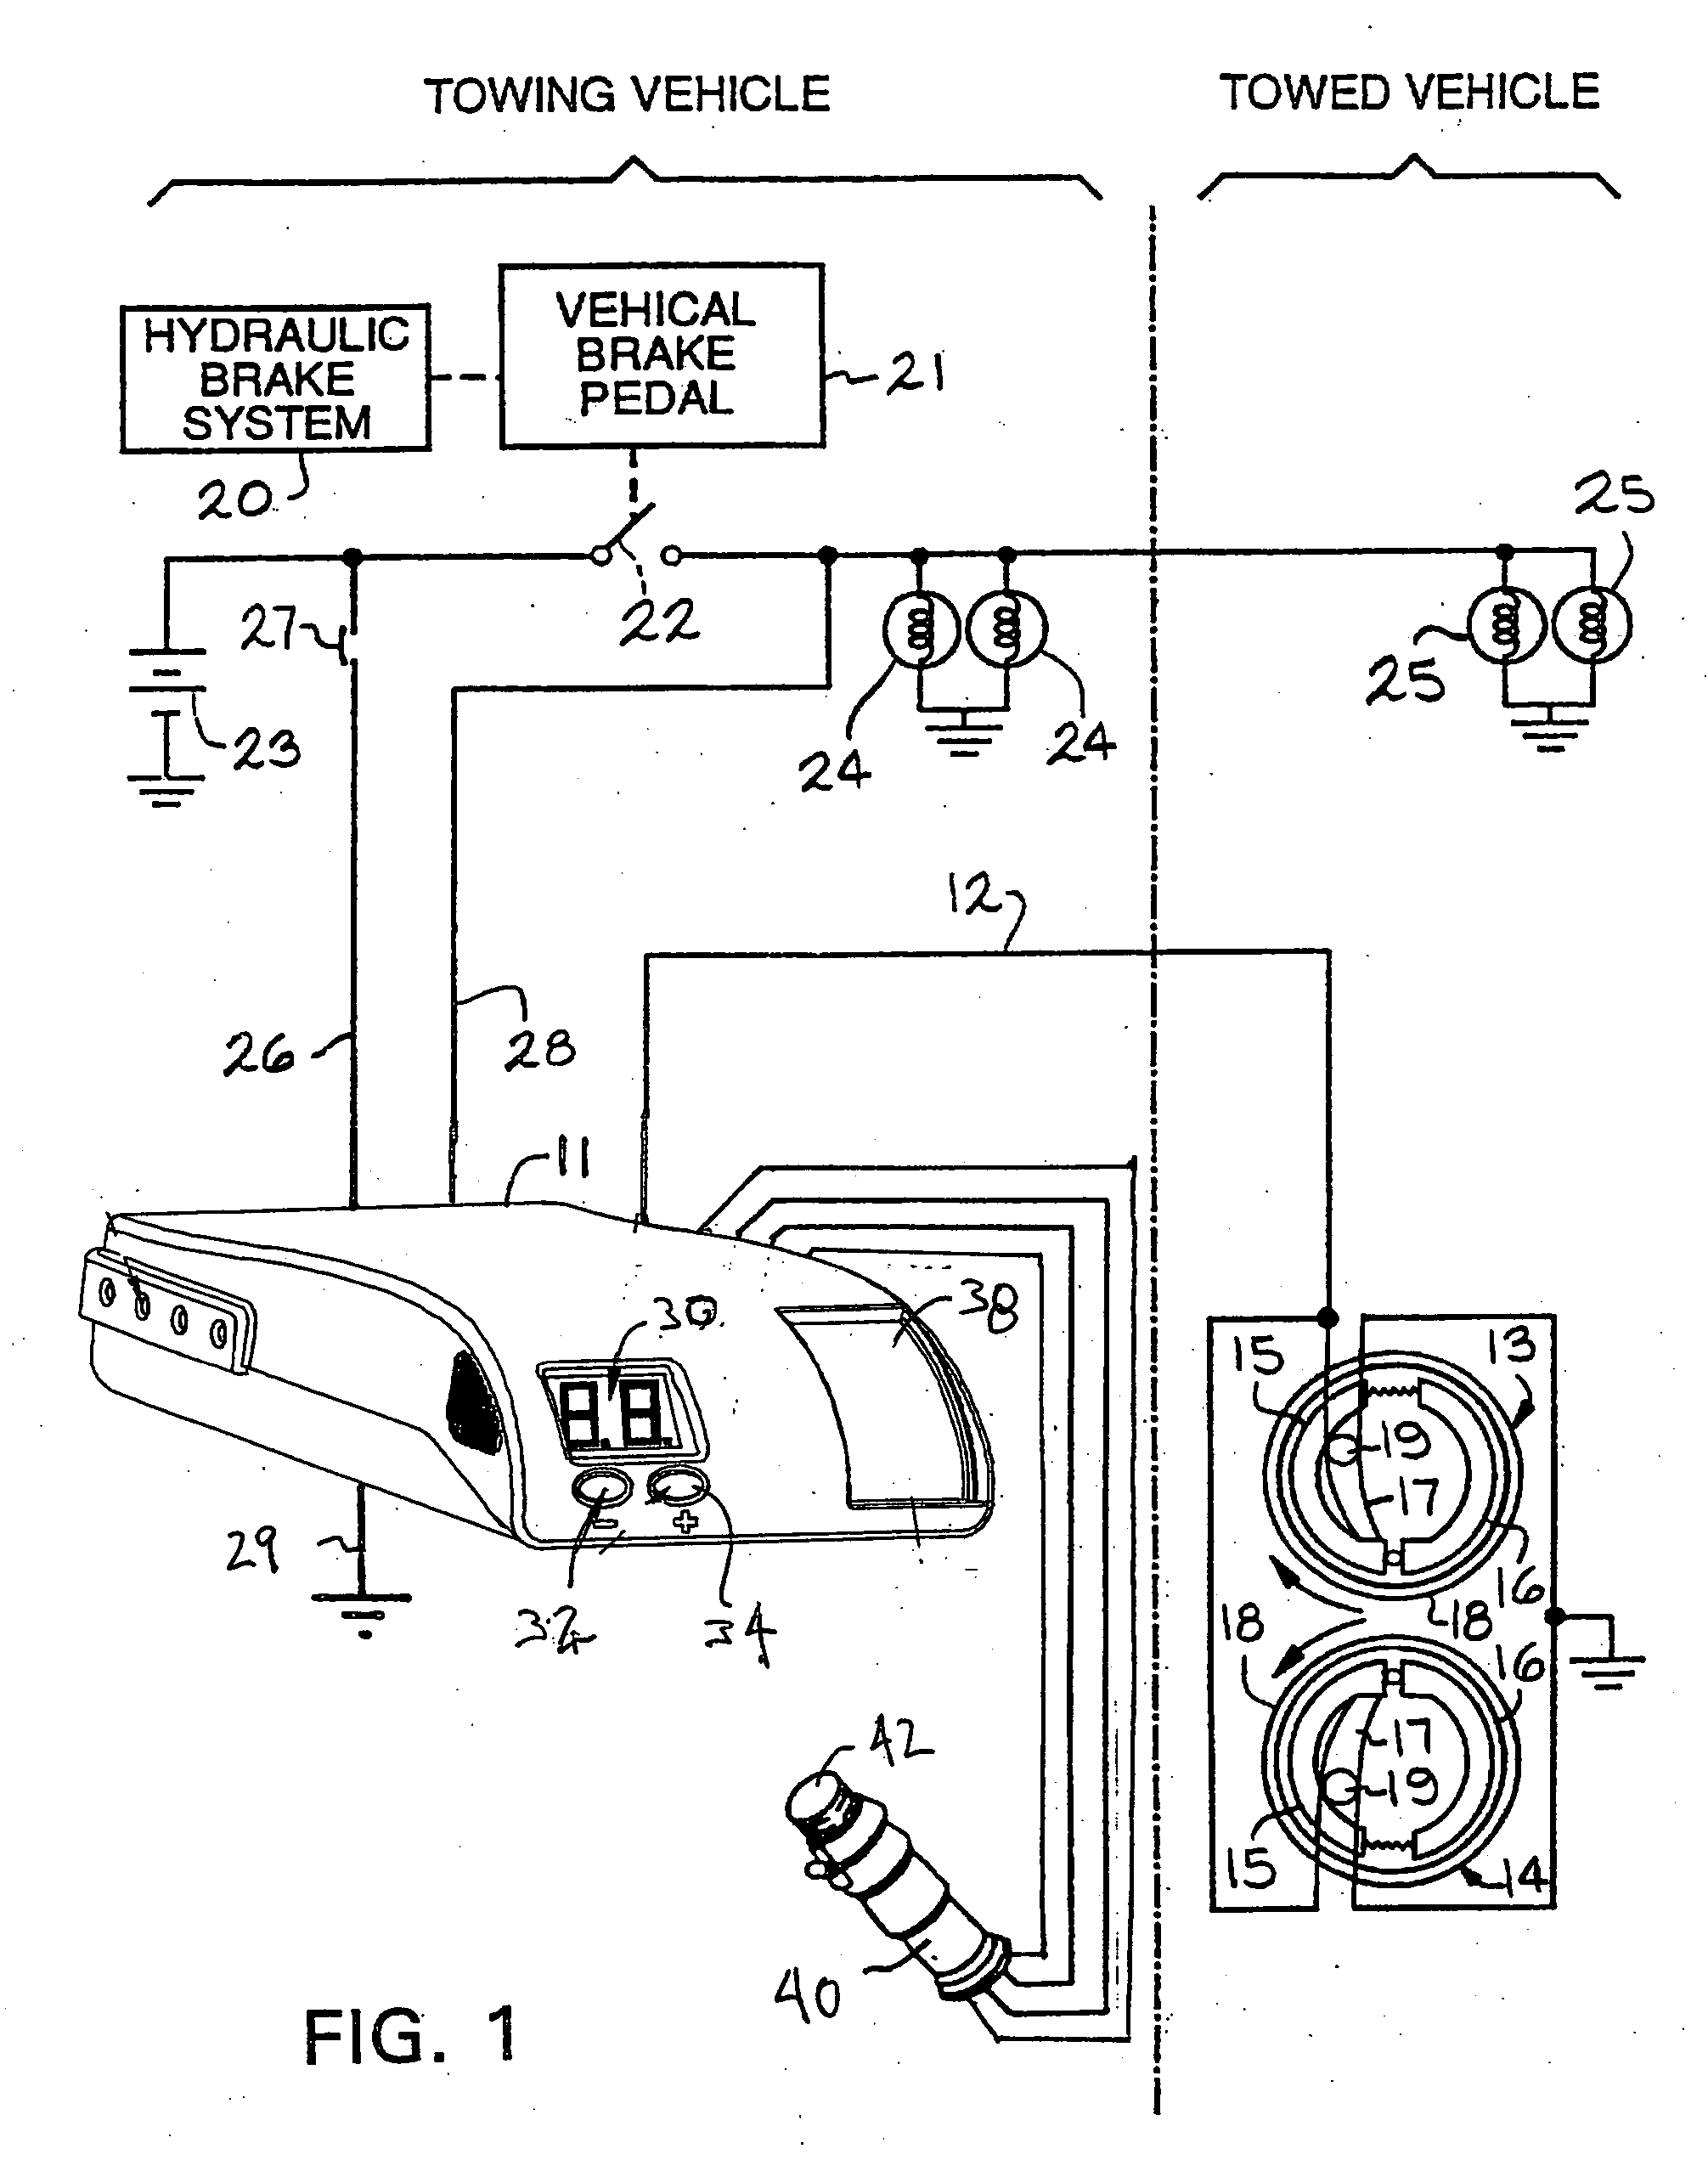 Electric trailer brake controller